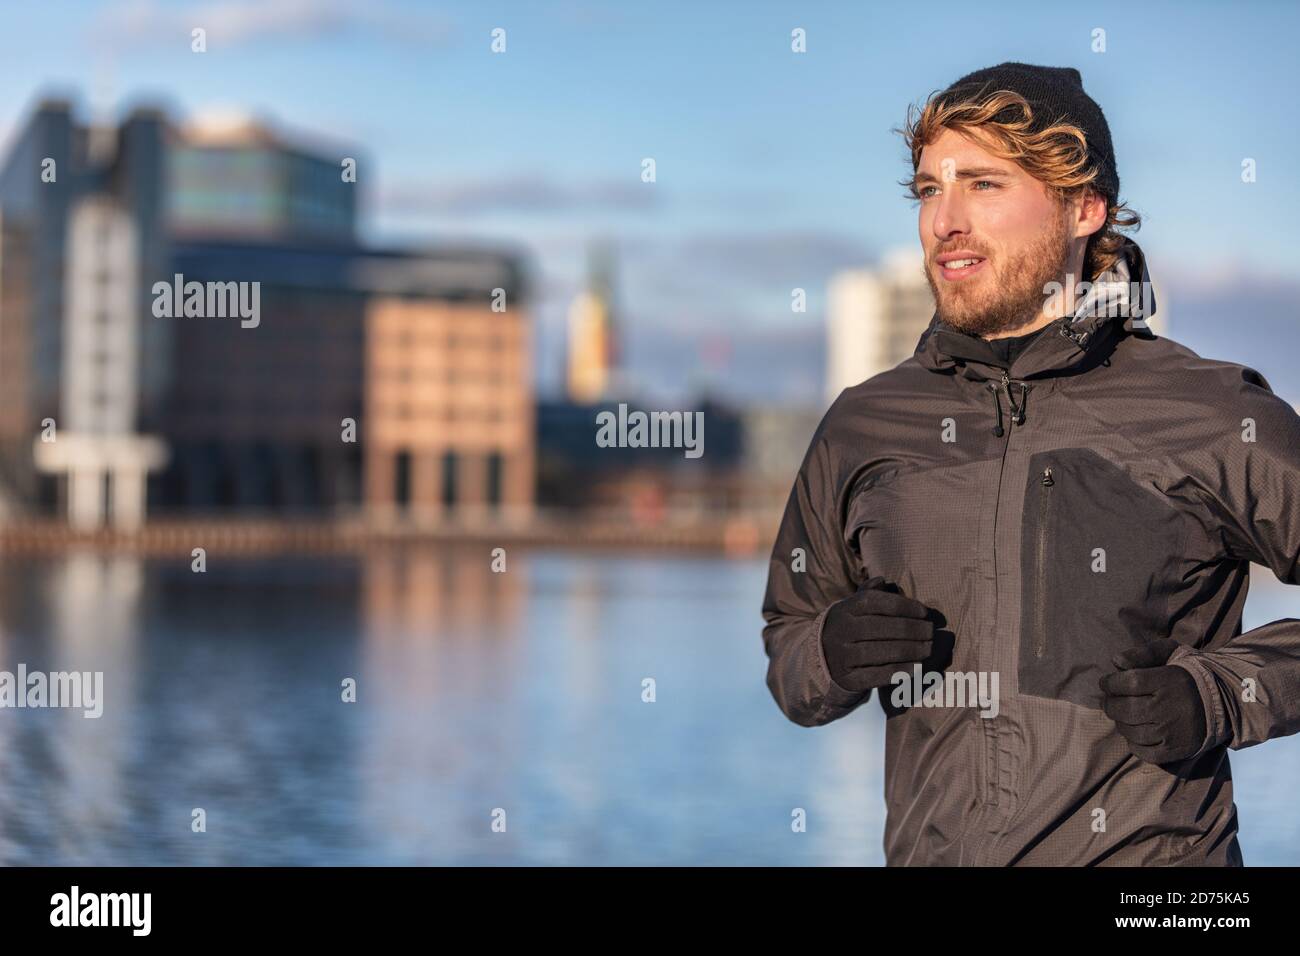 Winter laufen Sportler Mann joggen im Freien in der Stadt außerhalb tragen kaltes Wetter Zubehör - Hut, Handschuhe, winddichte Sportjacke. Aktiv gesund Stockfoto